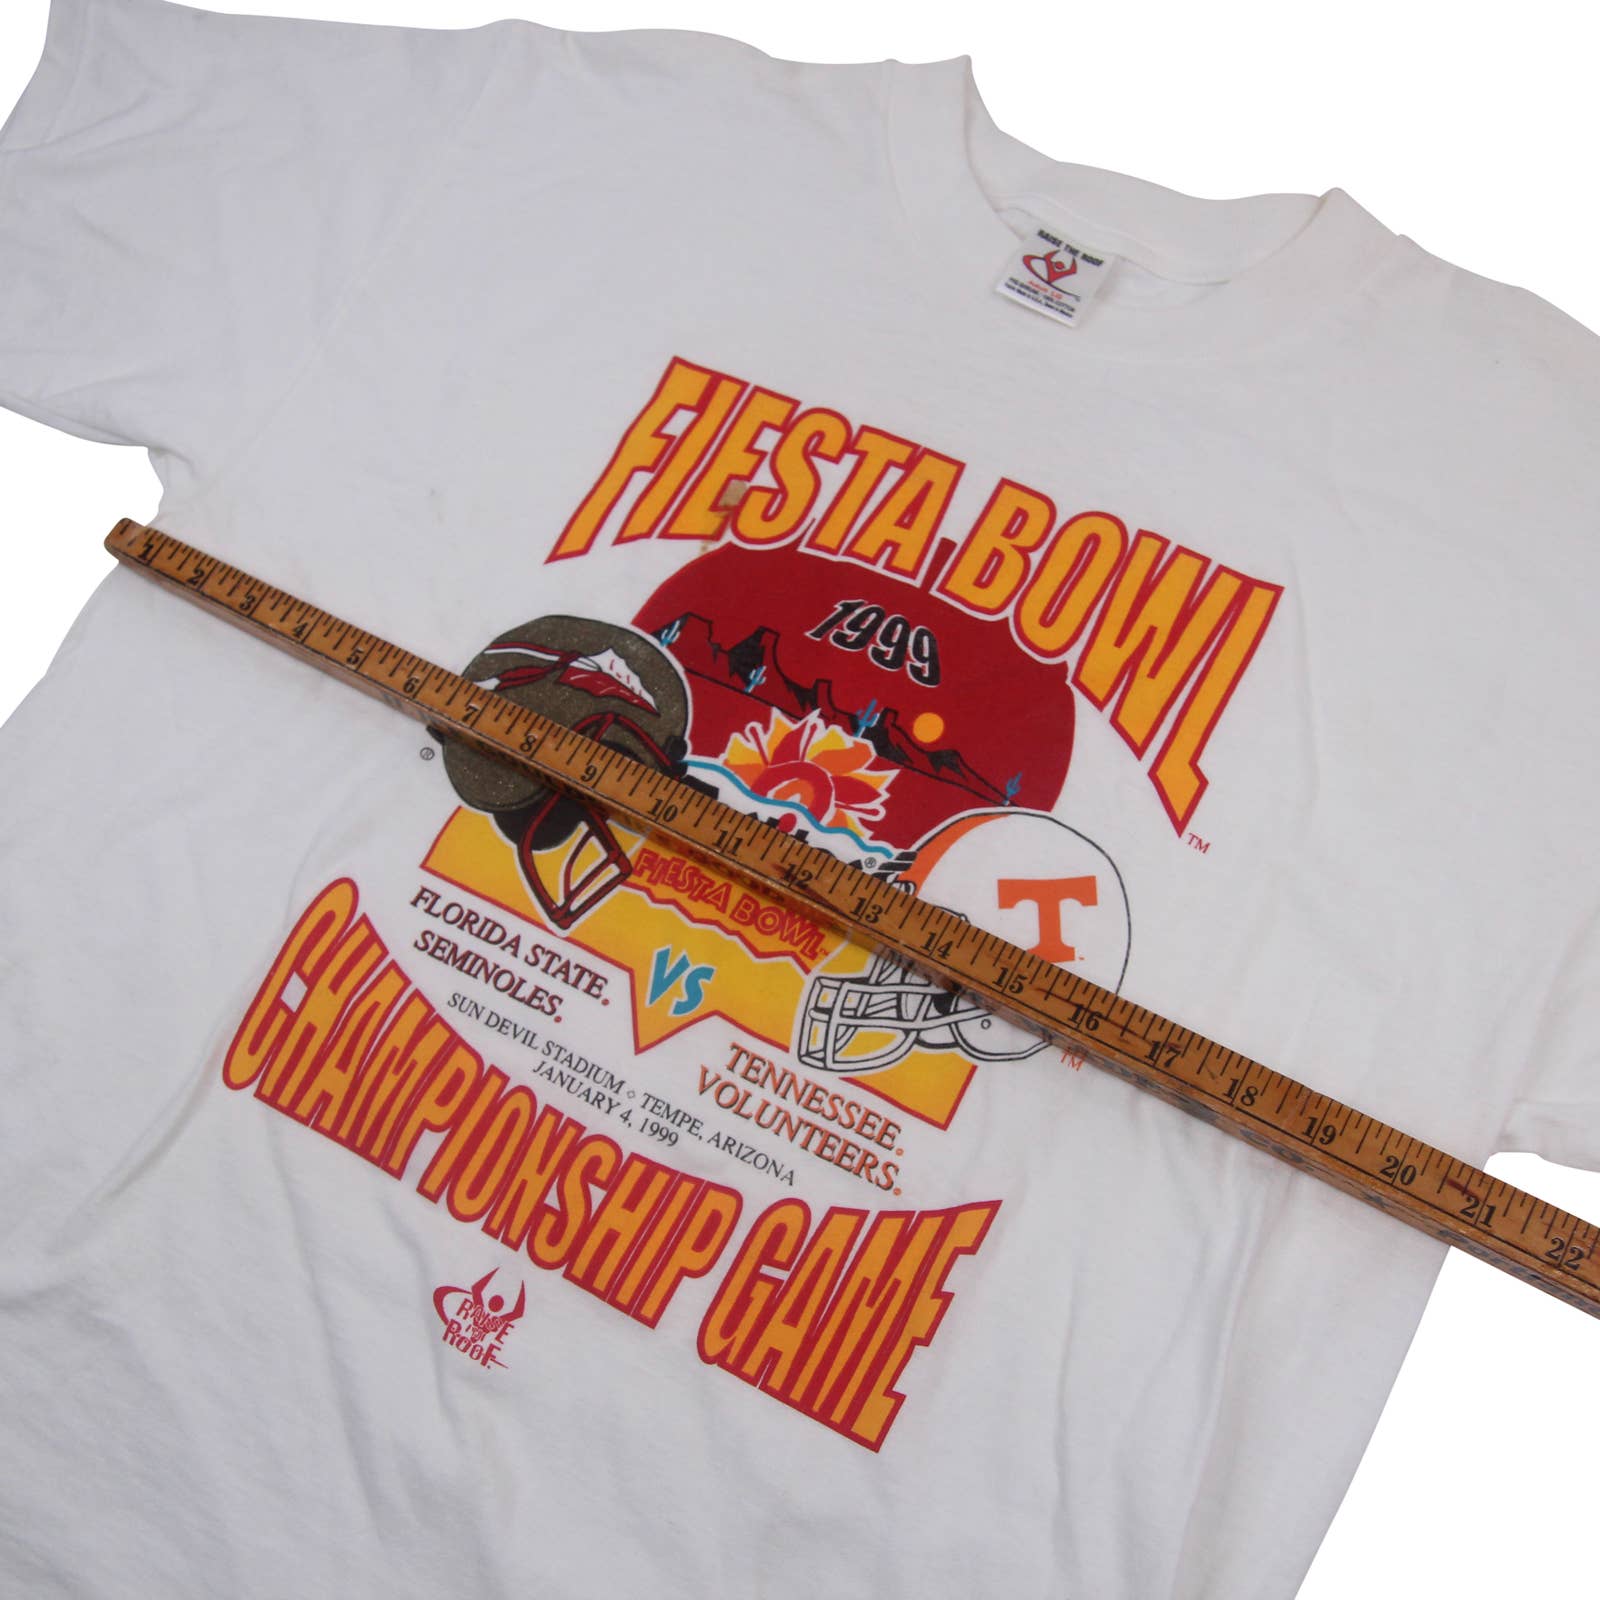 Louisville Cardinals 1991 Fiesta Bowl Shirt - Vintagenclassic Tee